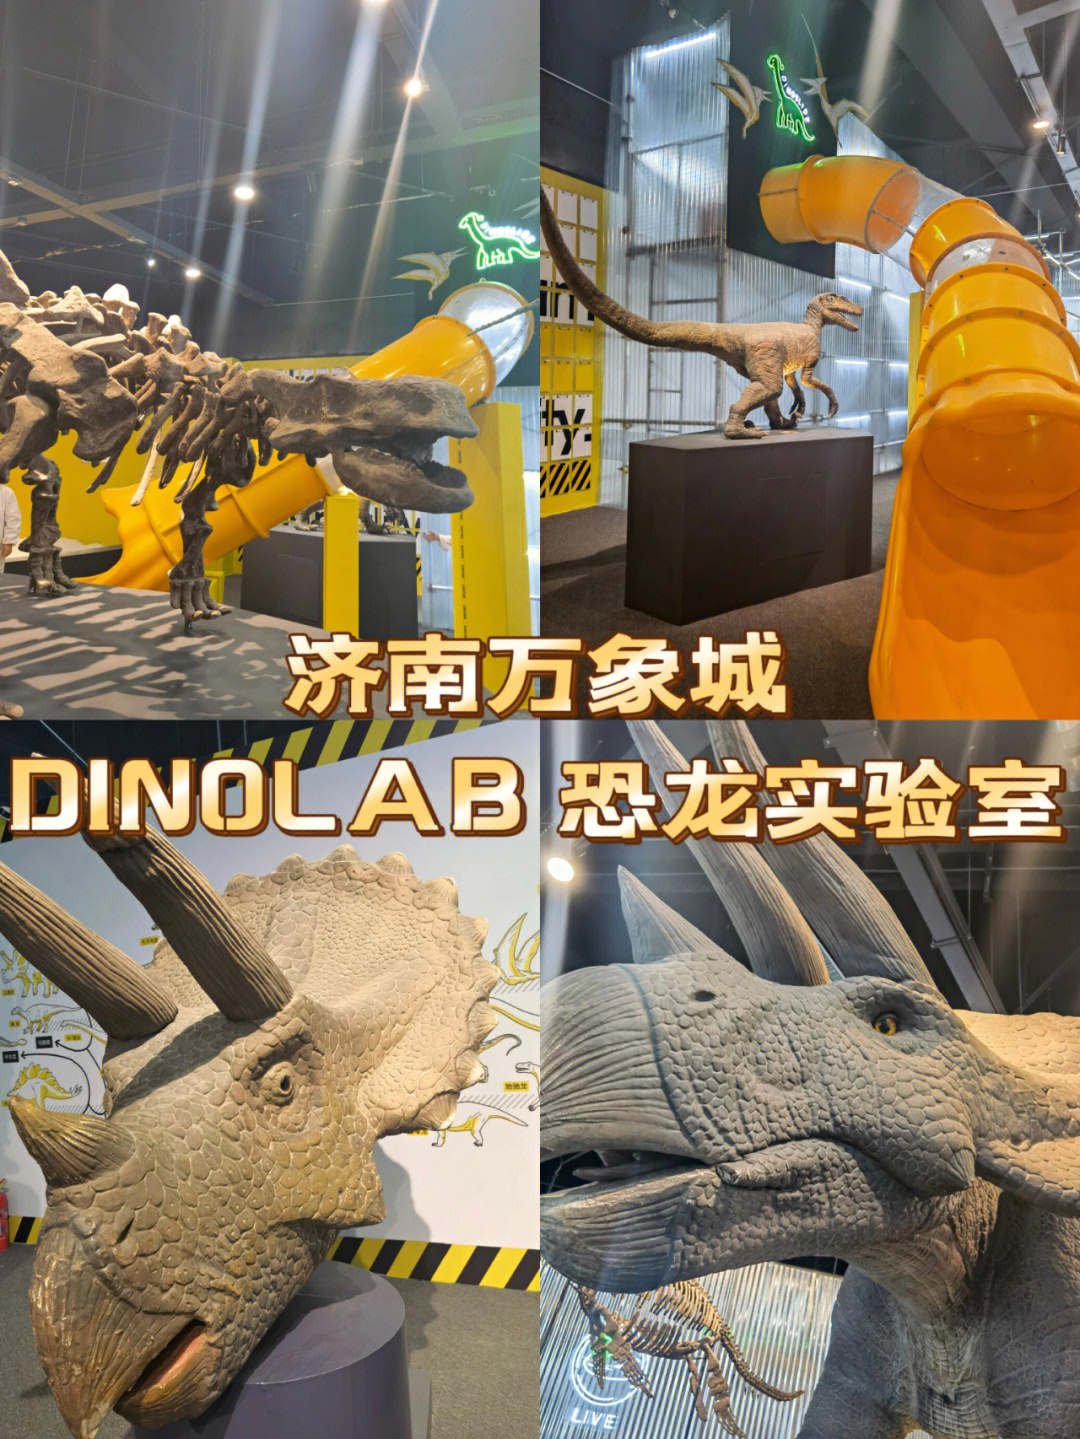 中国实验室孵化恐龙图片